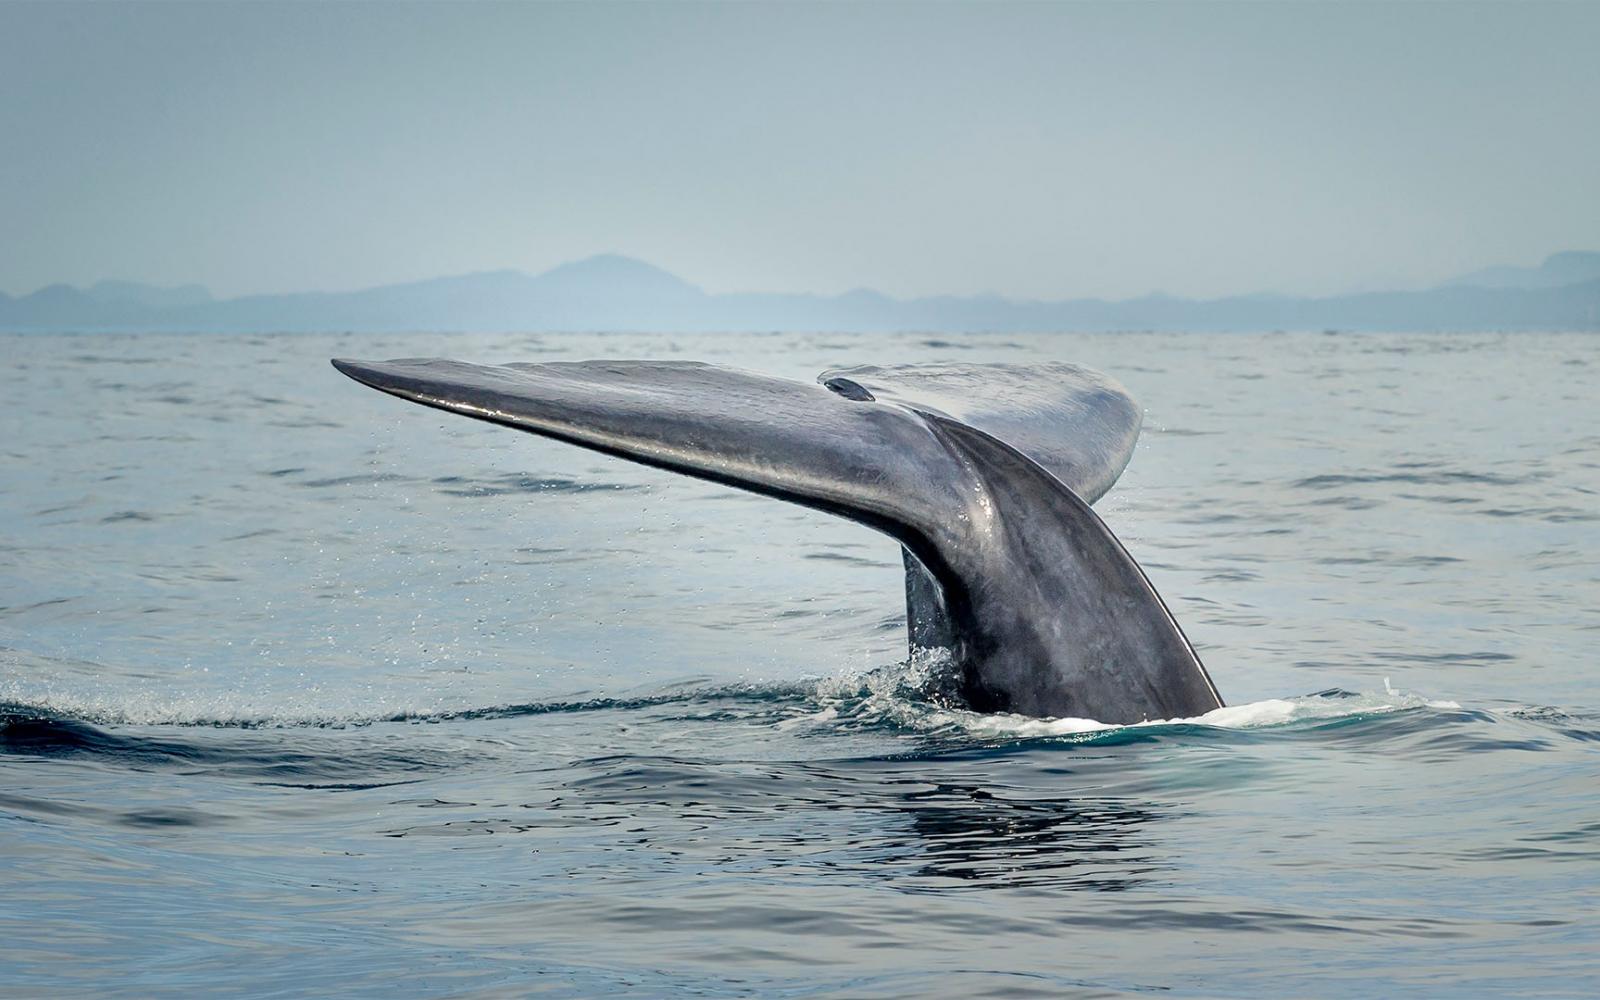 Une baleine bleue (Balaenoptera musculus) plonge dans l'eau. On ne voit que sa queue.